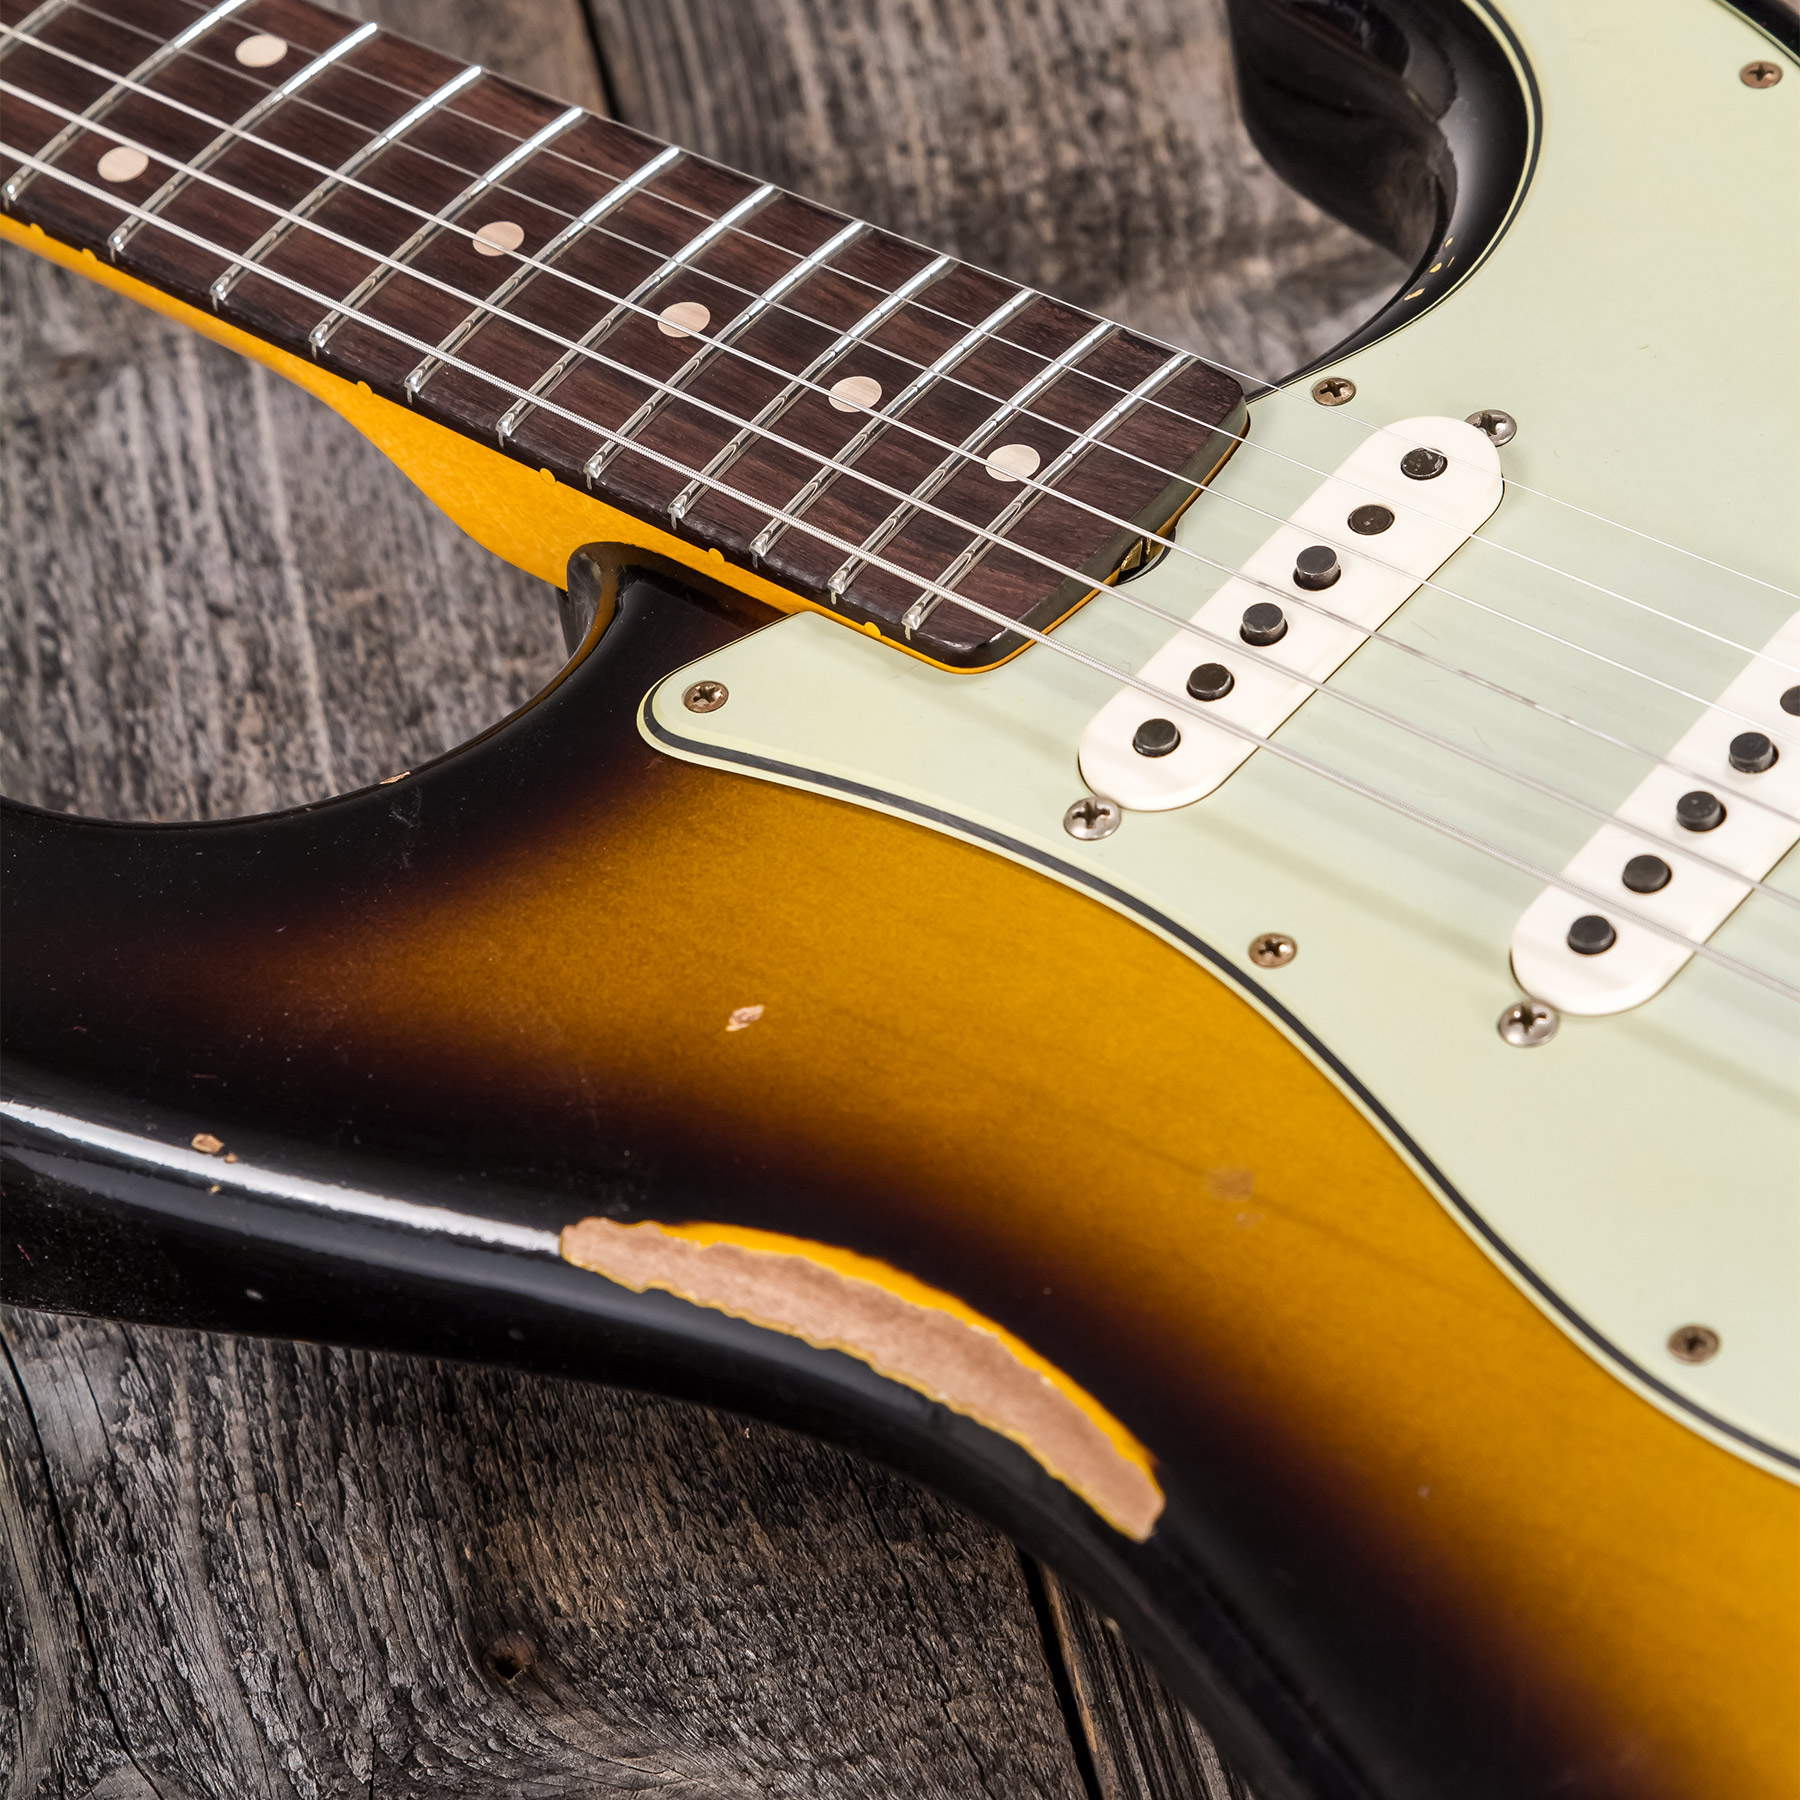 Fender Custom Shop Strat 1959 3s Trem Rw #r117661 - Relic 2-color Sunburst - E-Gitarre in Str-Form - Variation 7